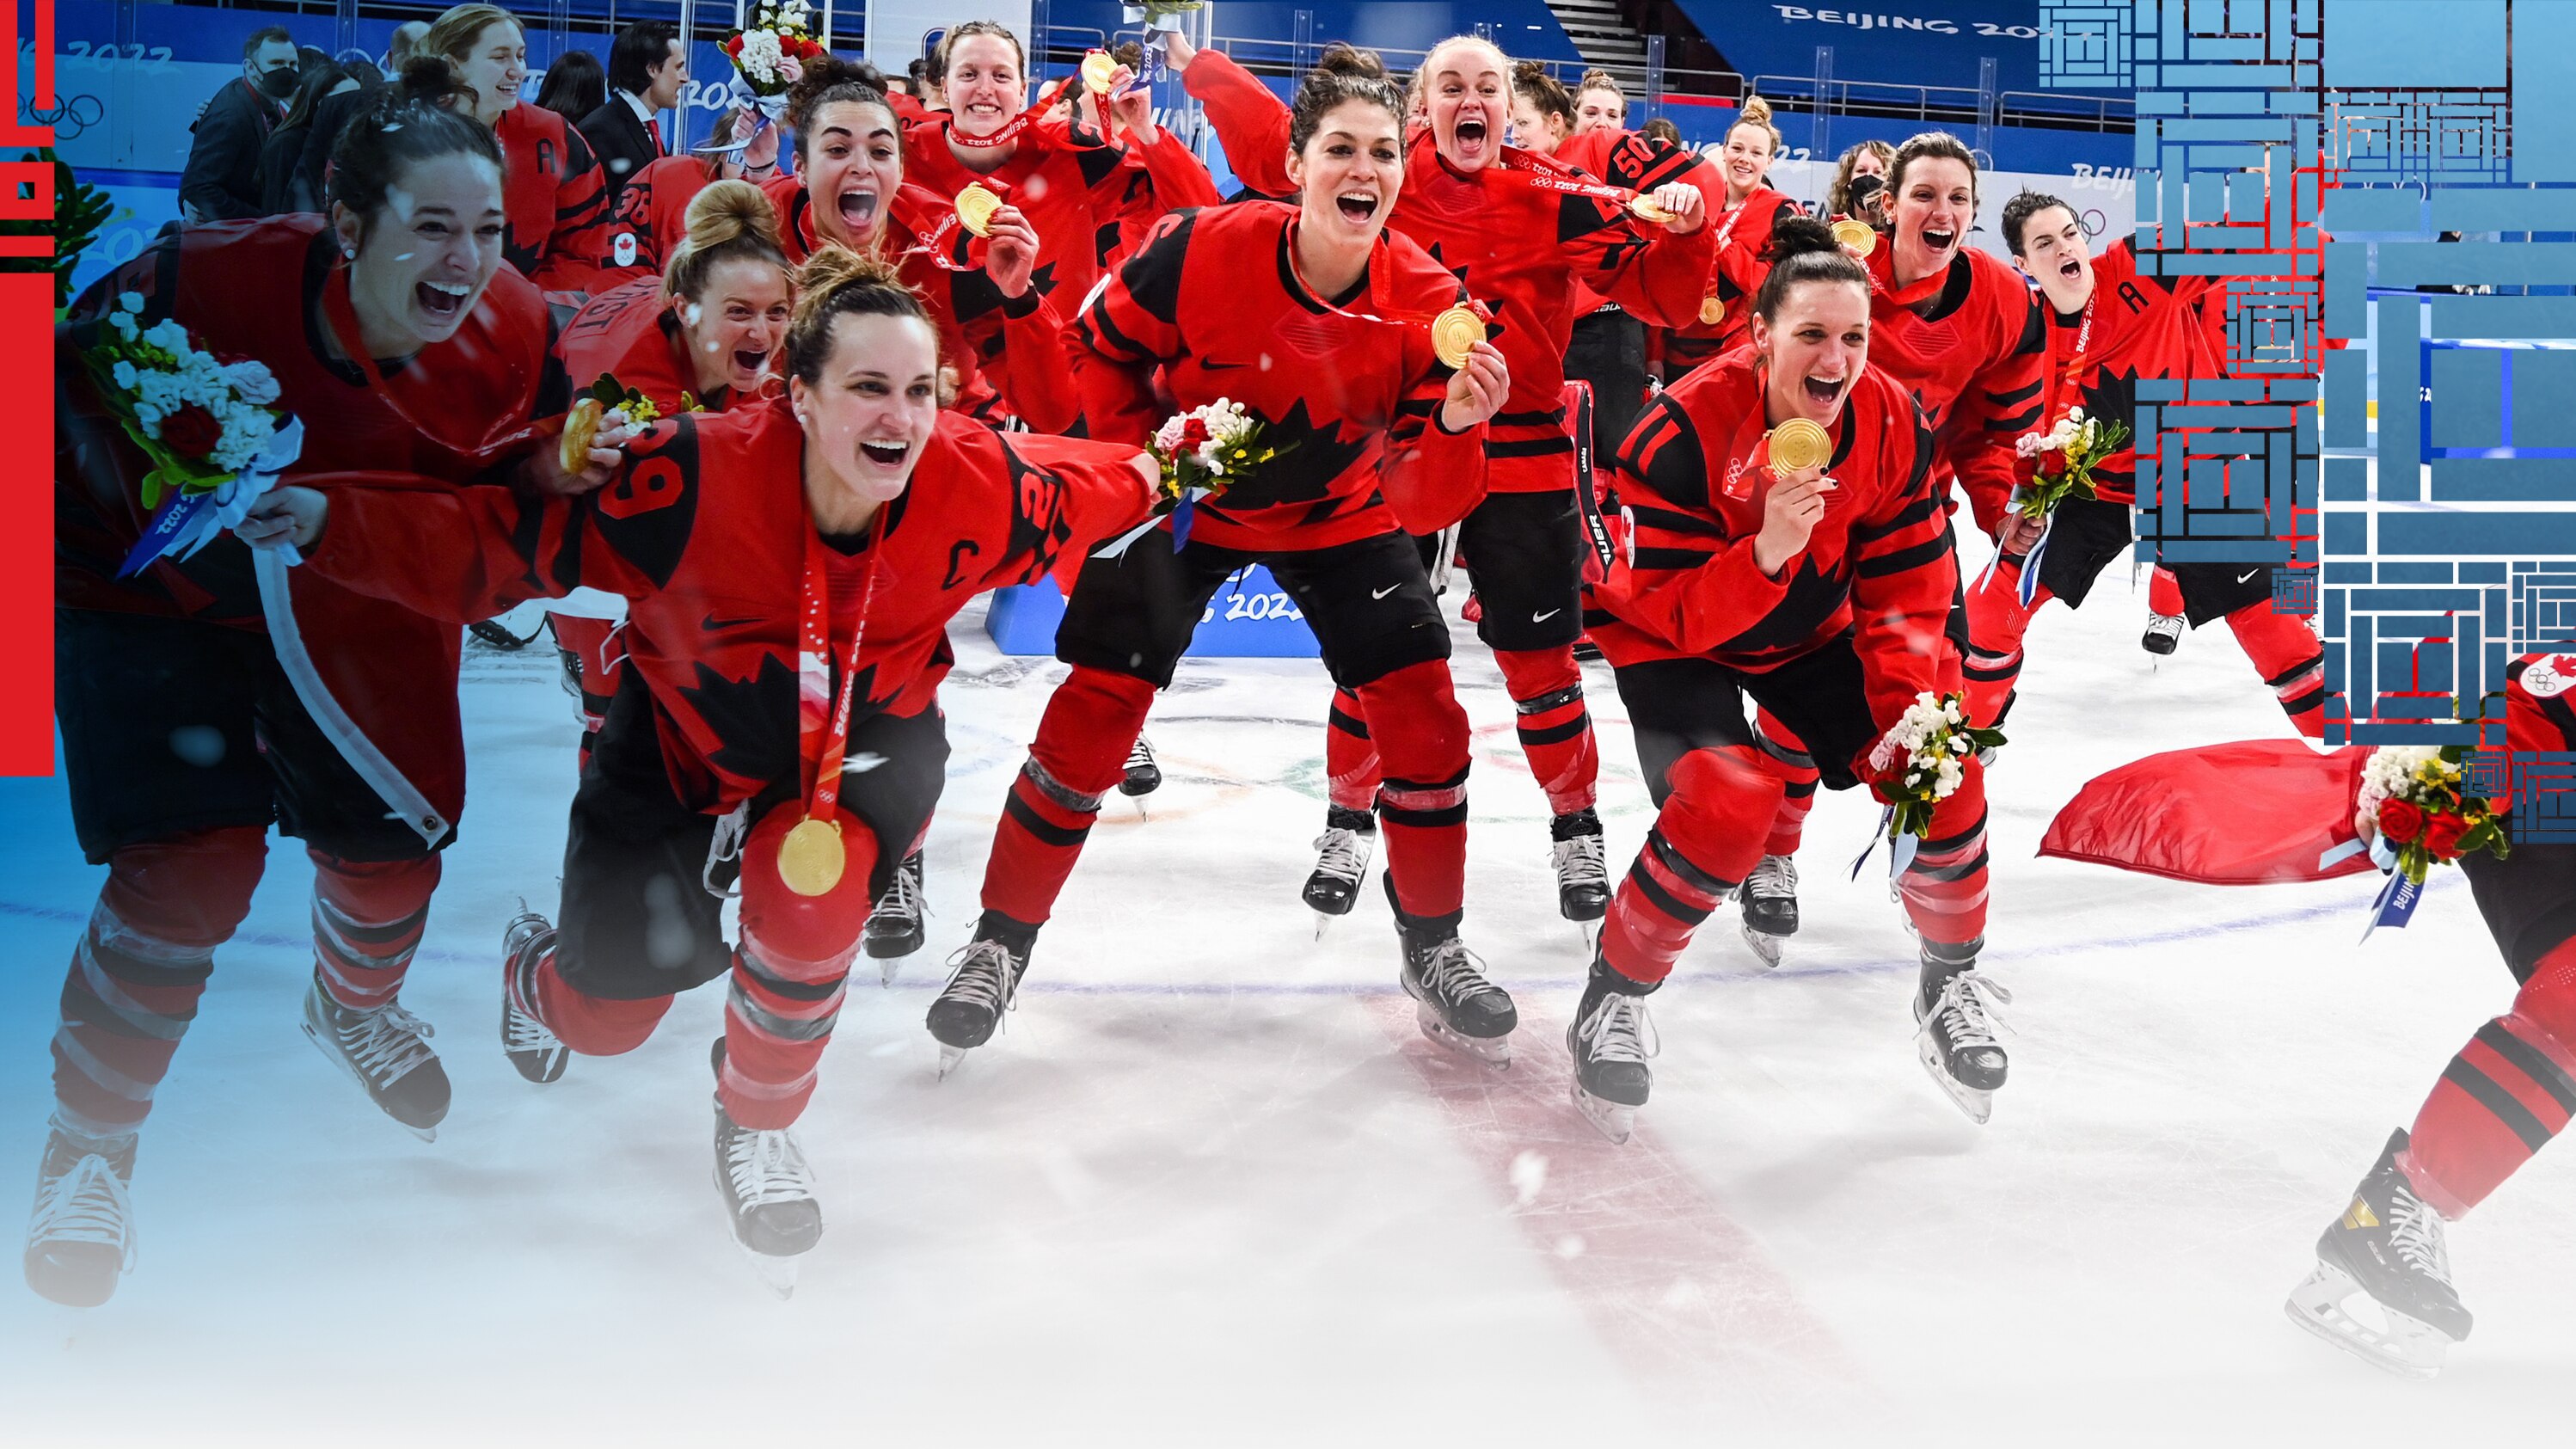 Des étoiles du hockey féminin régional commentent la médaille du Canada 
Des étoiles du hockey féminin régional commentent la médaille du Canada